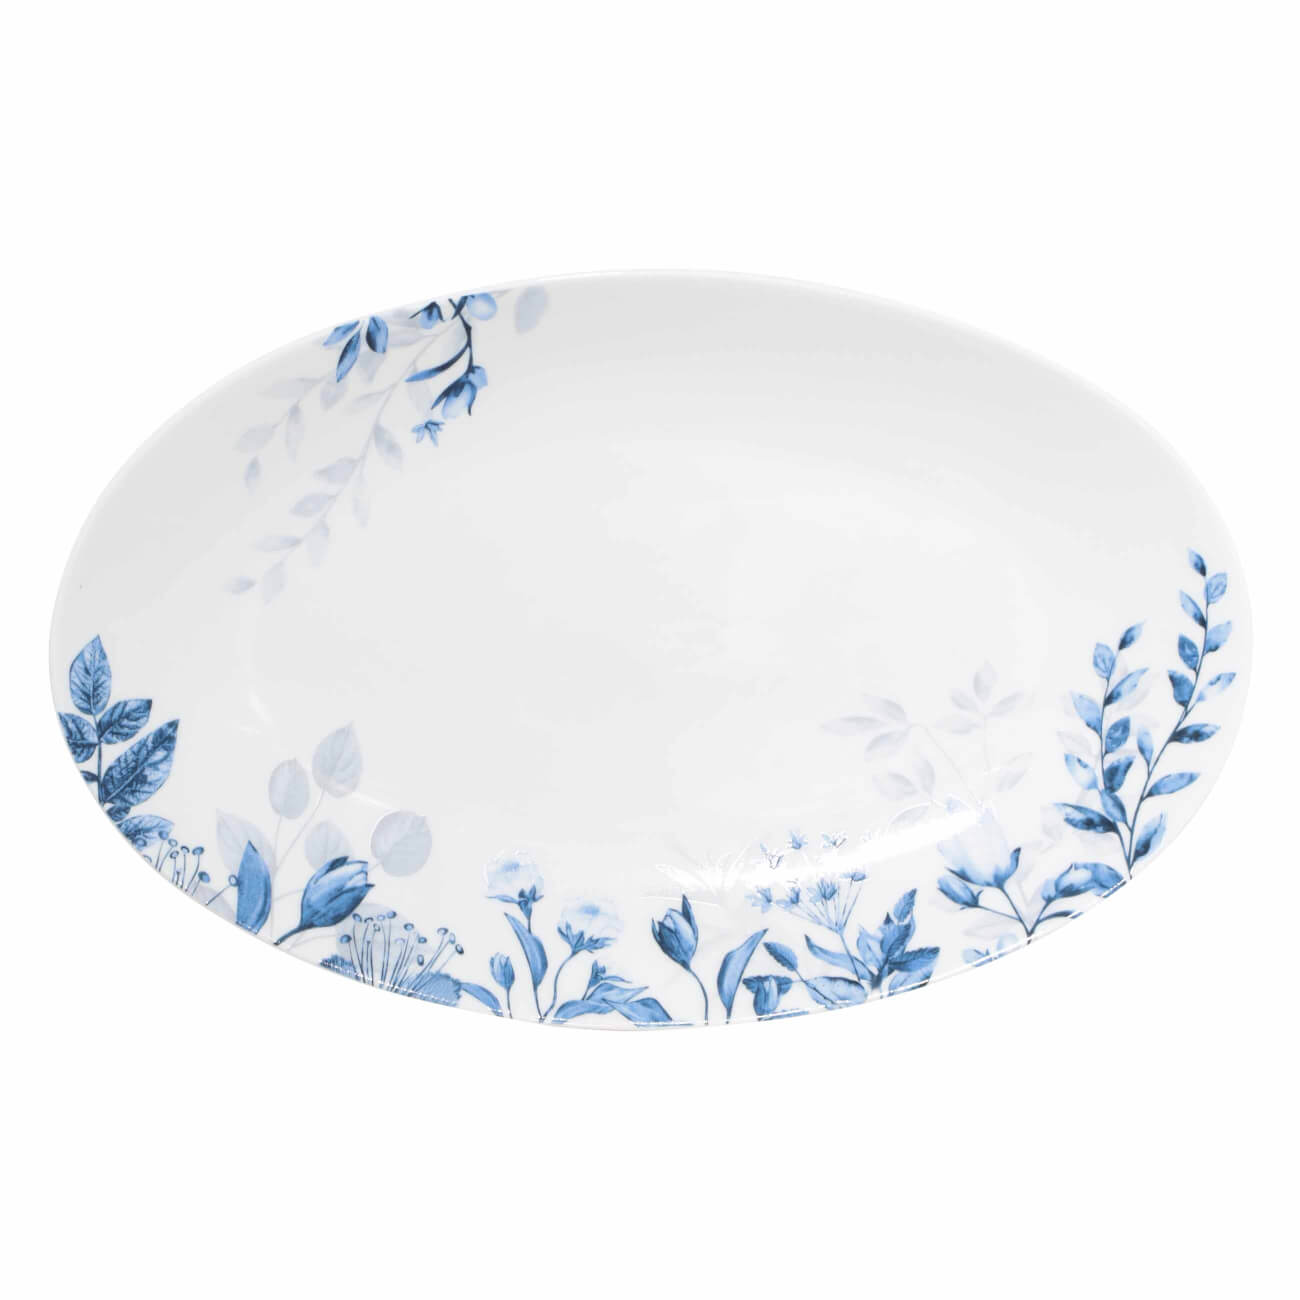 Блюдо, 30х19 см, фарфор N, овальное, белое, Синие цветы, Royal flower блюдо для хлеба bernadotte декор синие вензеля 34 см